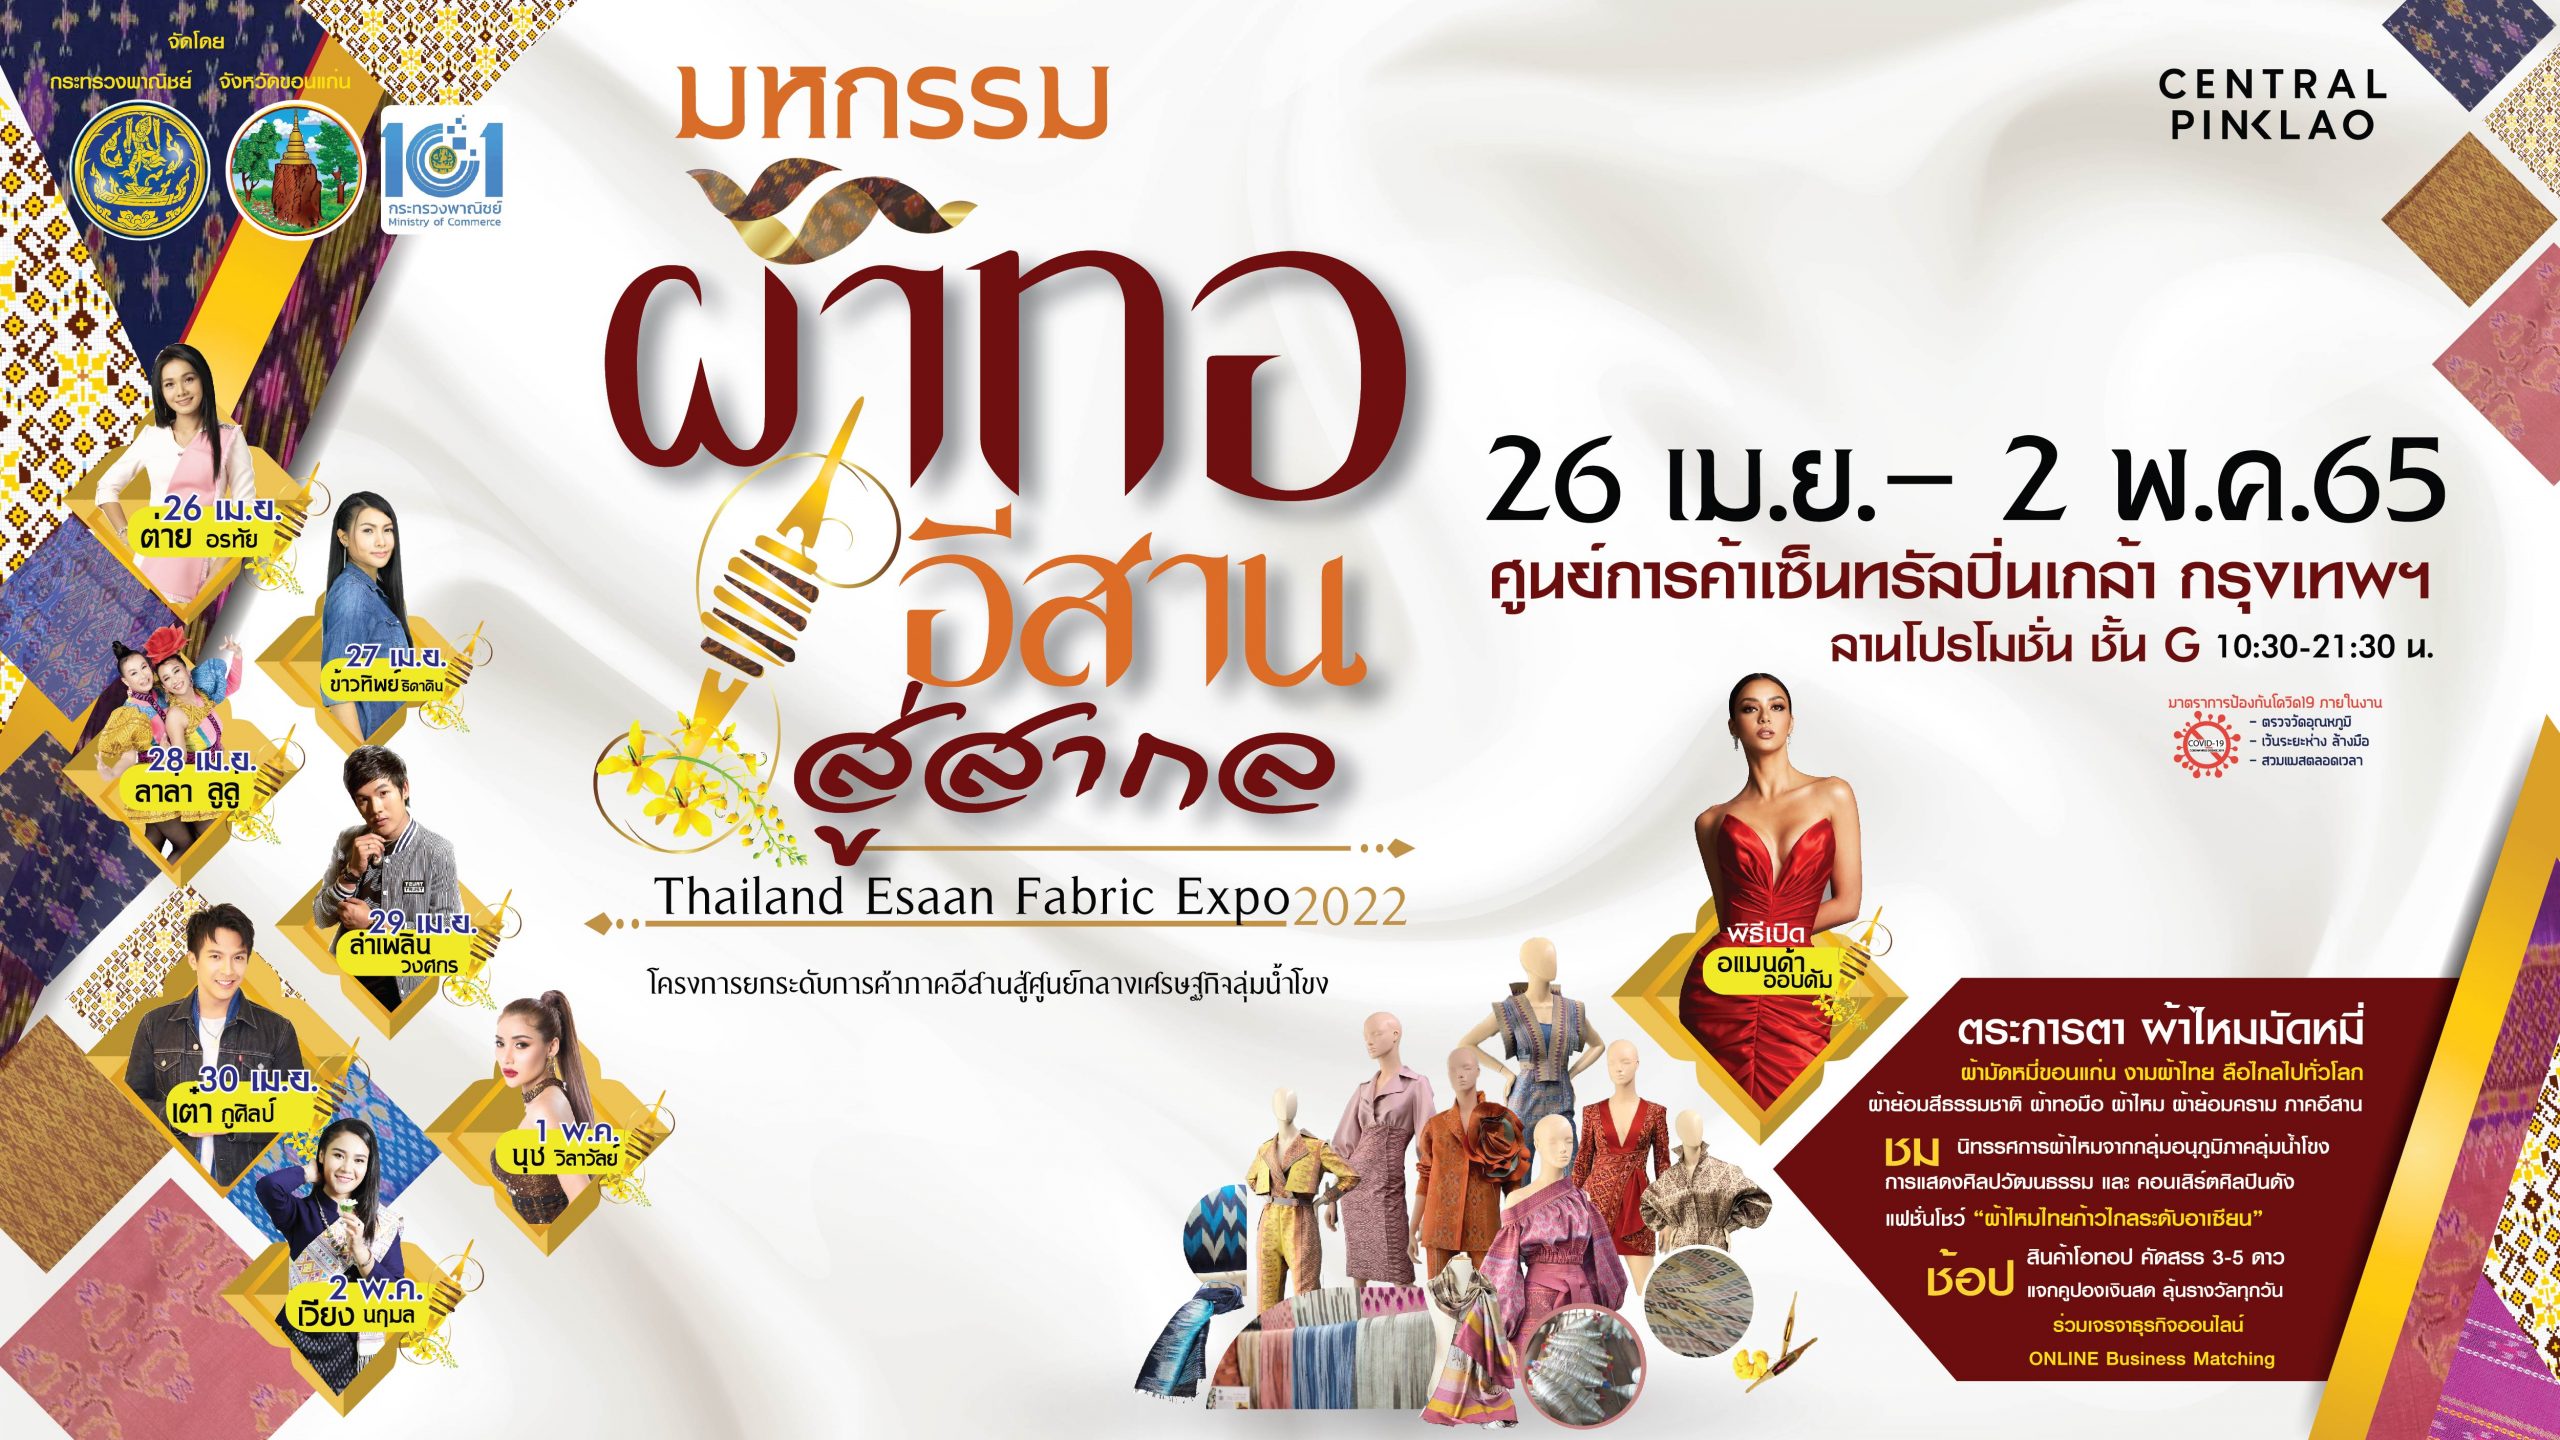 Thailand Esaan Fabric Expo 2022 มหกรรมผ้าทออีสานสู่สากล สำนักงานพาณิชย์จังหวัดขอนแก่น